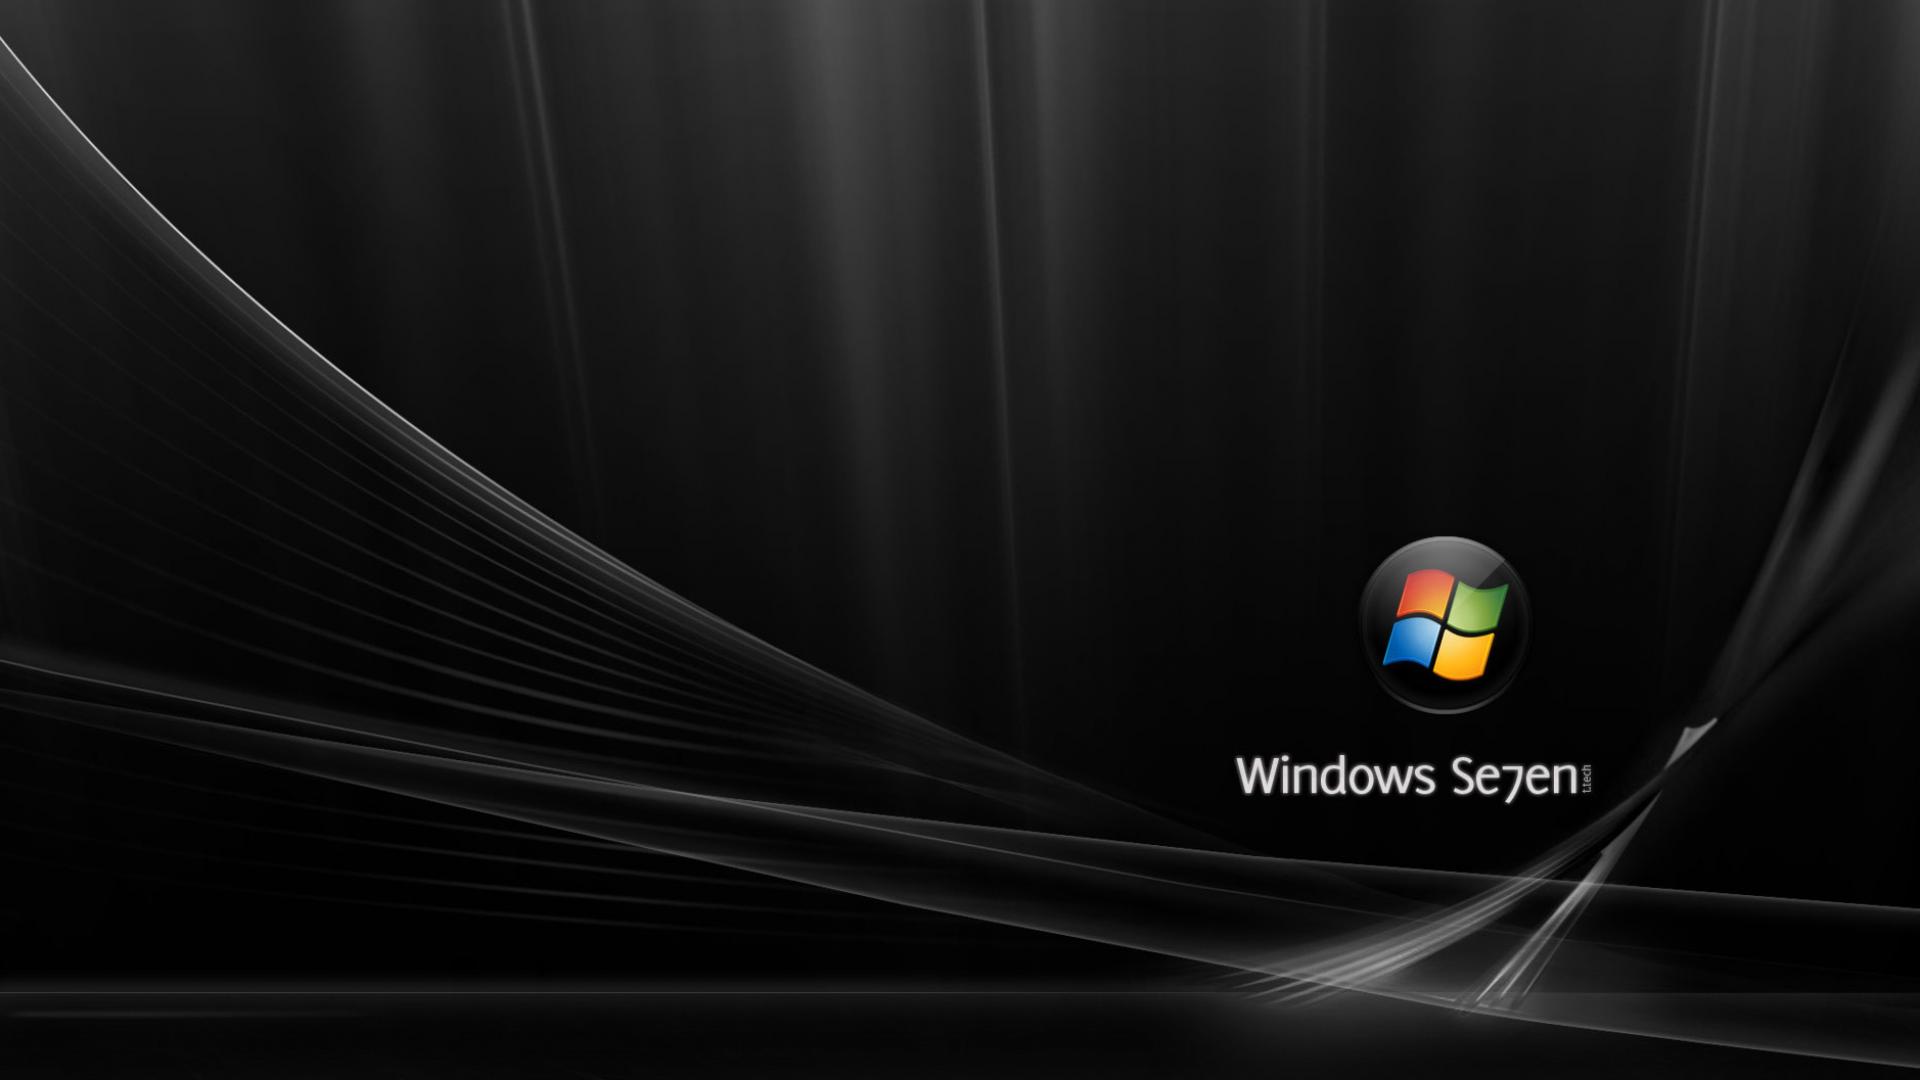 Обои Windows 7 starter edition для рабочего стола 1920х1080